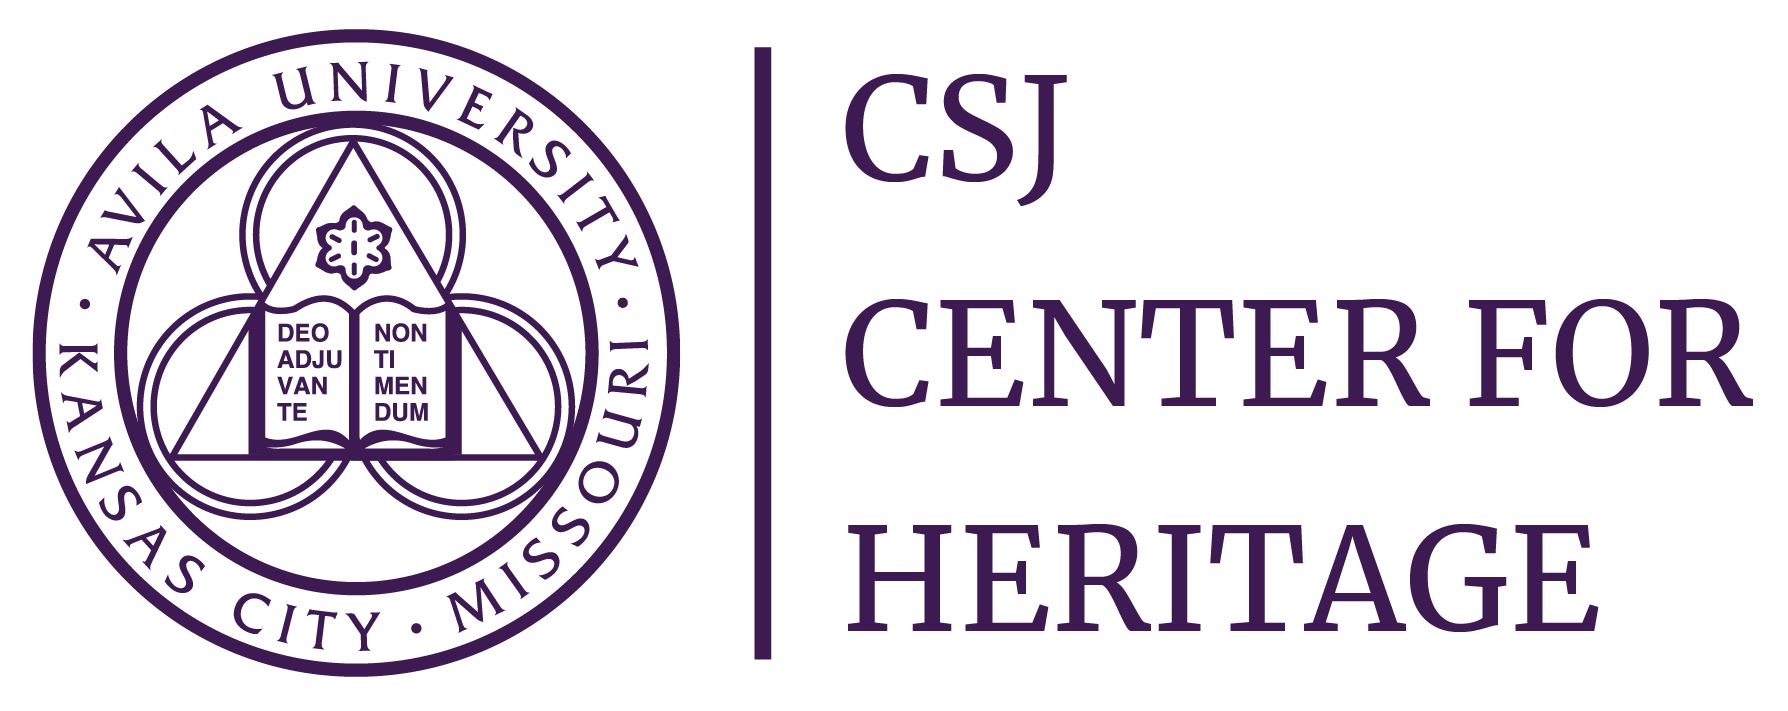 Avila University CSJ Center for Heritage